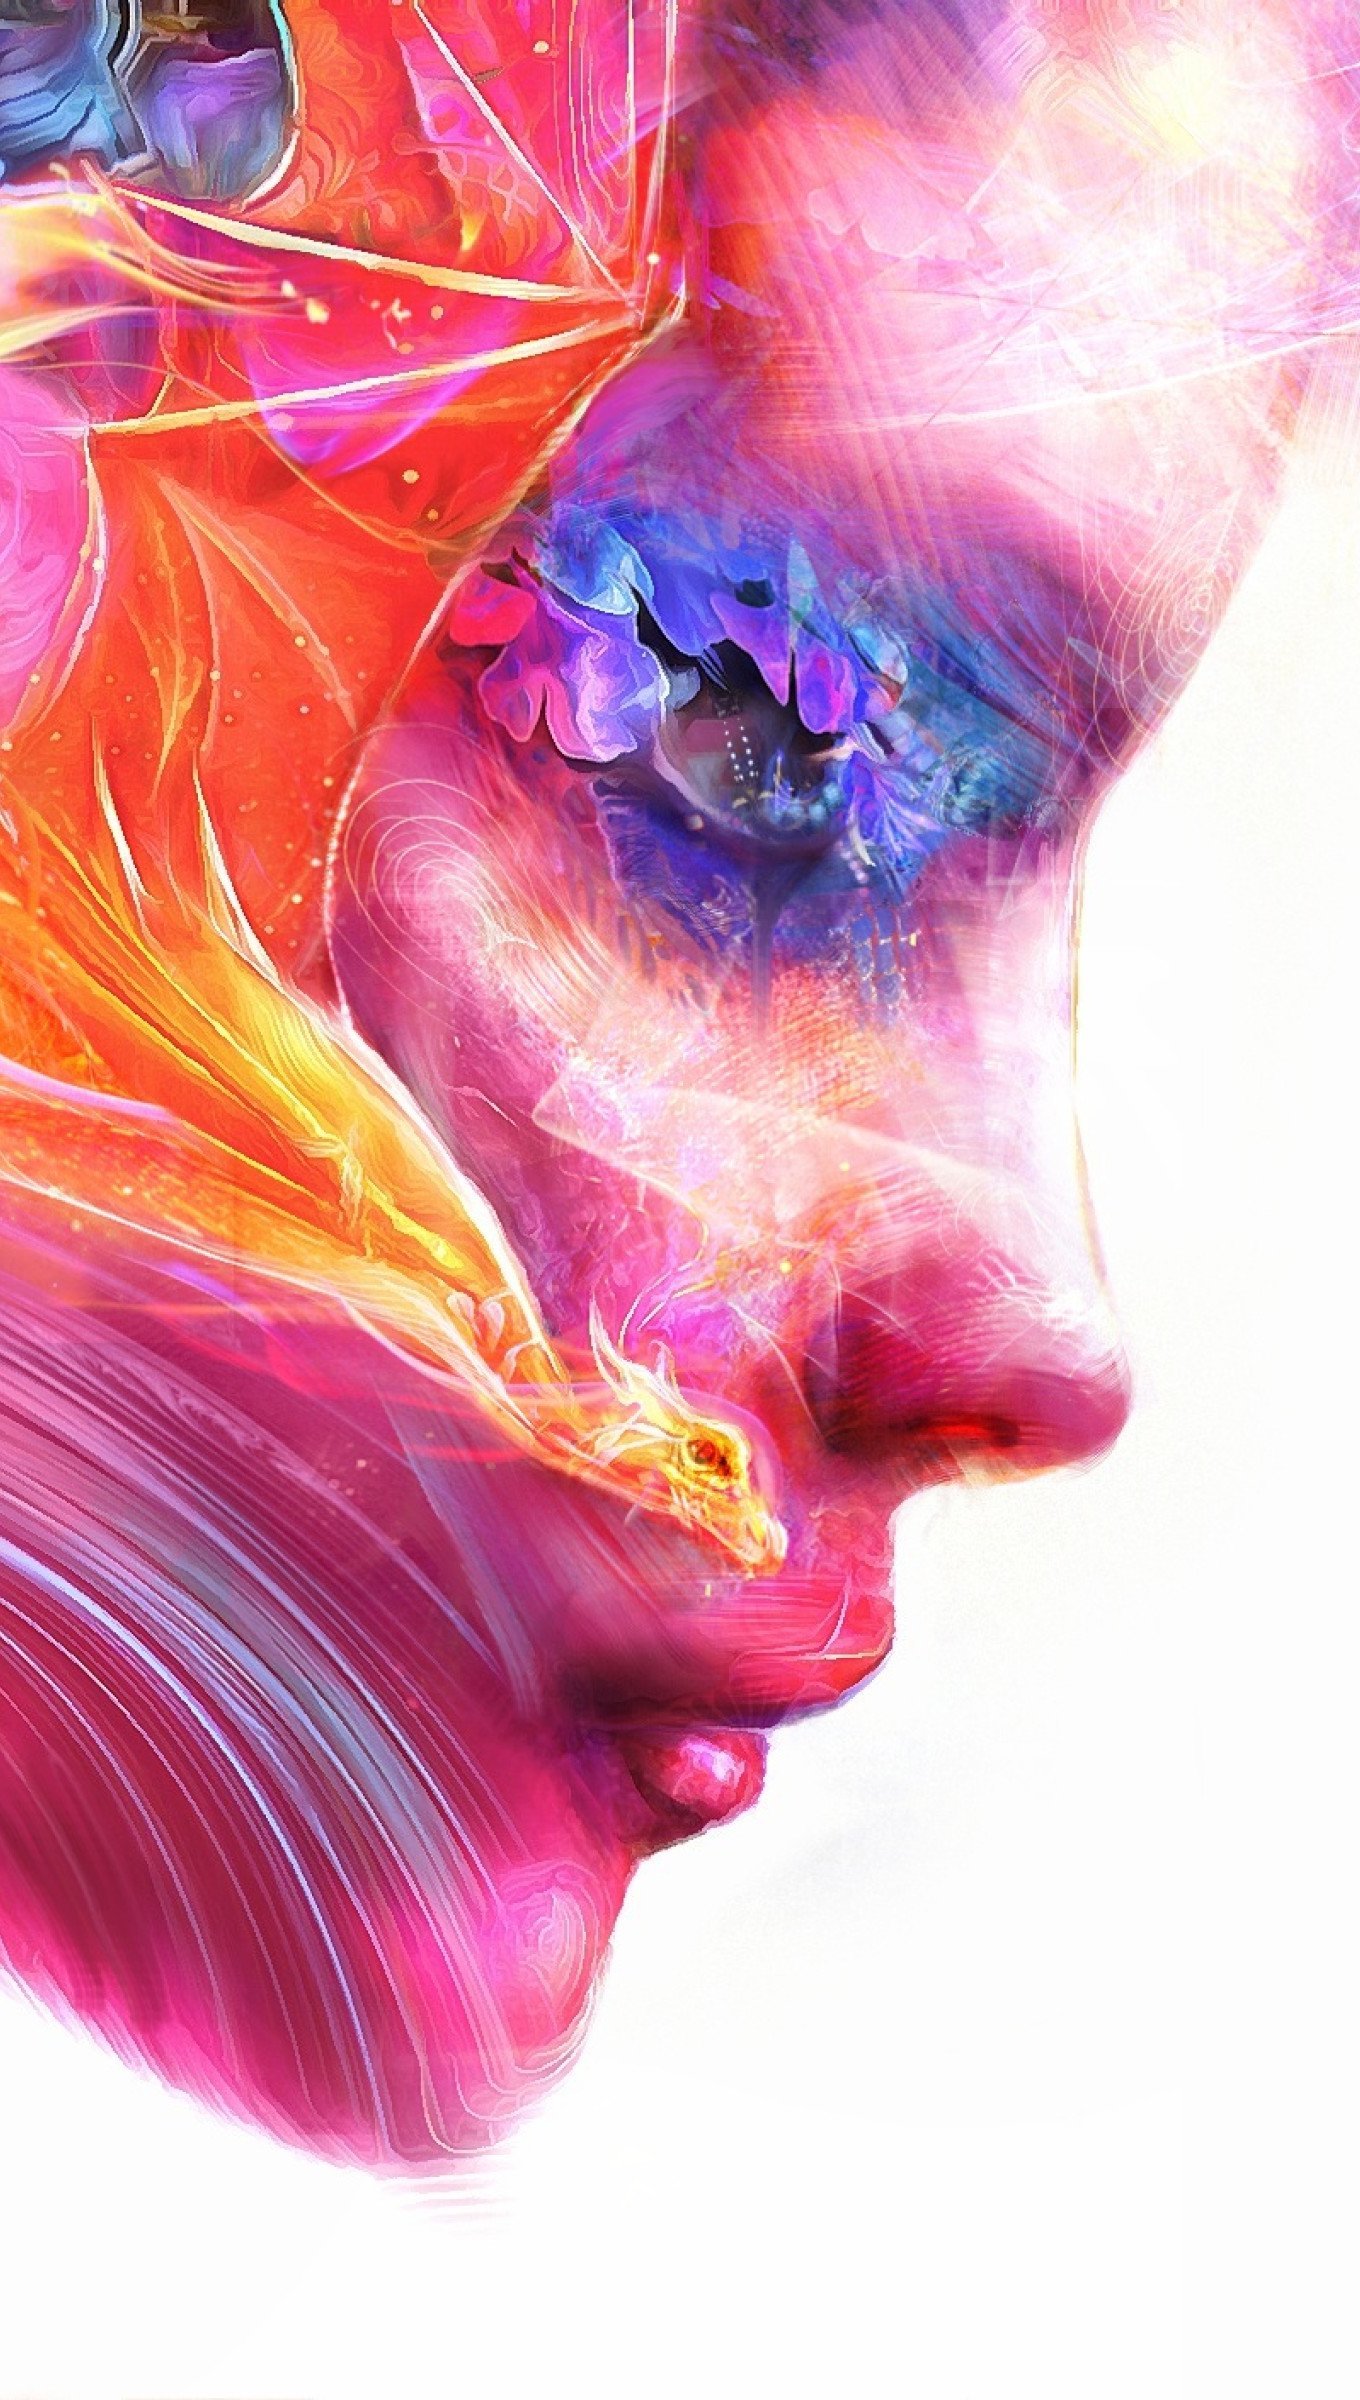 Wallpaper Face of woman Digital Art Vertical